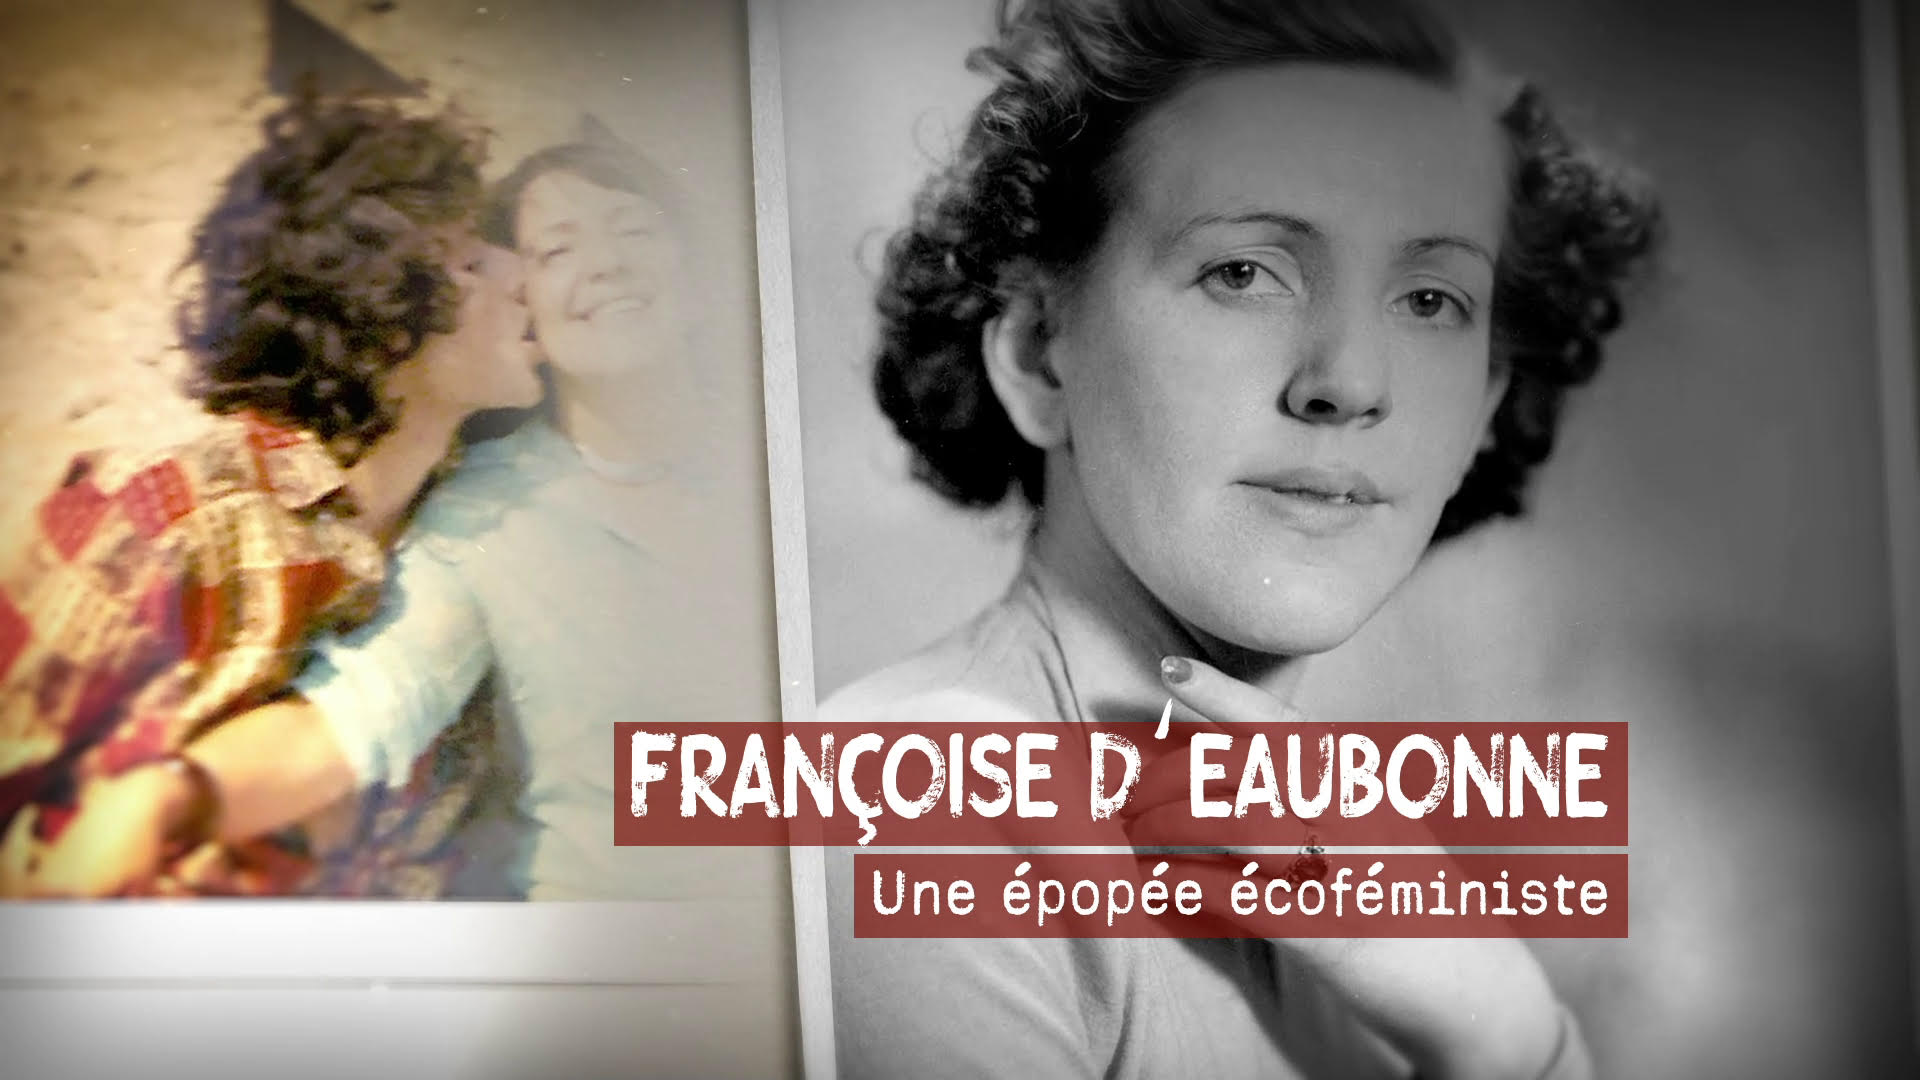 « Françoise d’Eaubonne, une épopée écoféministe » sur France 3, un destin de femme hors norme